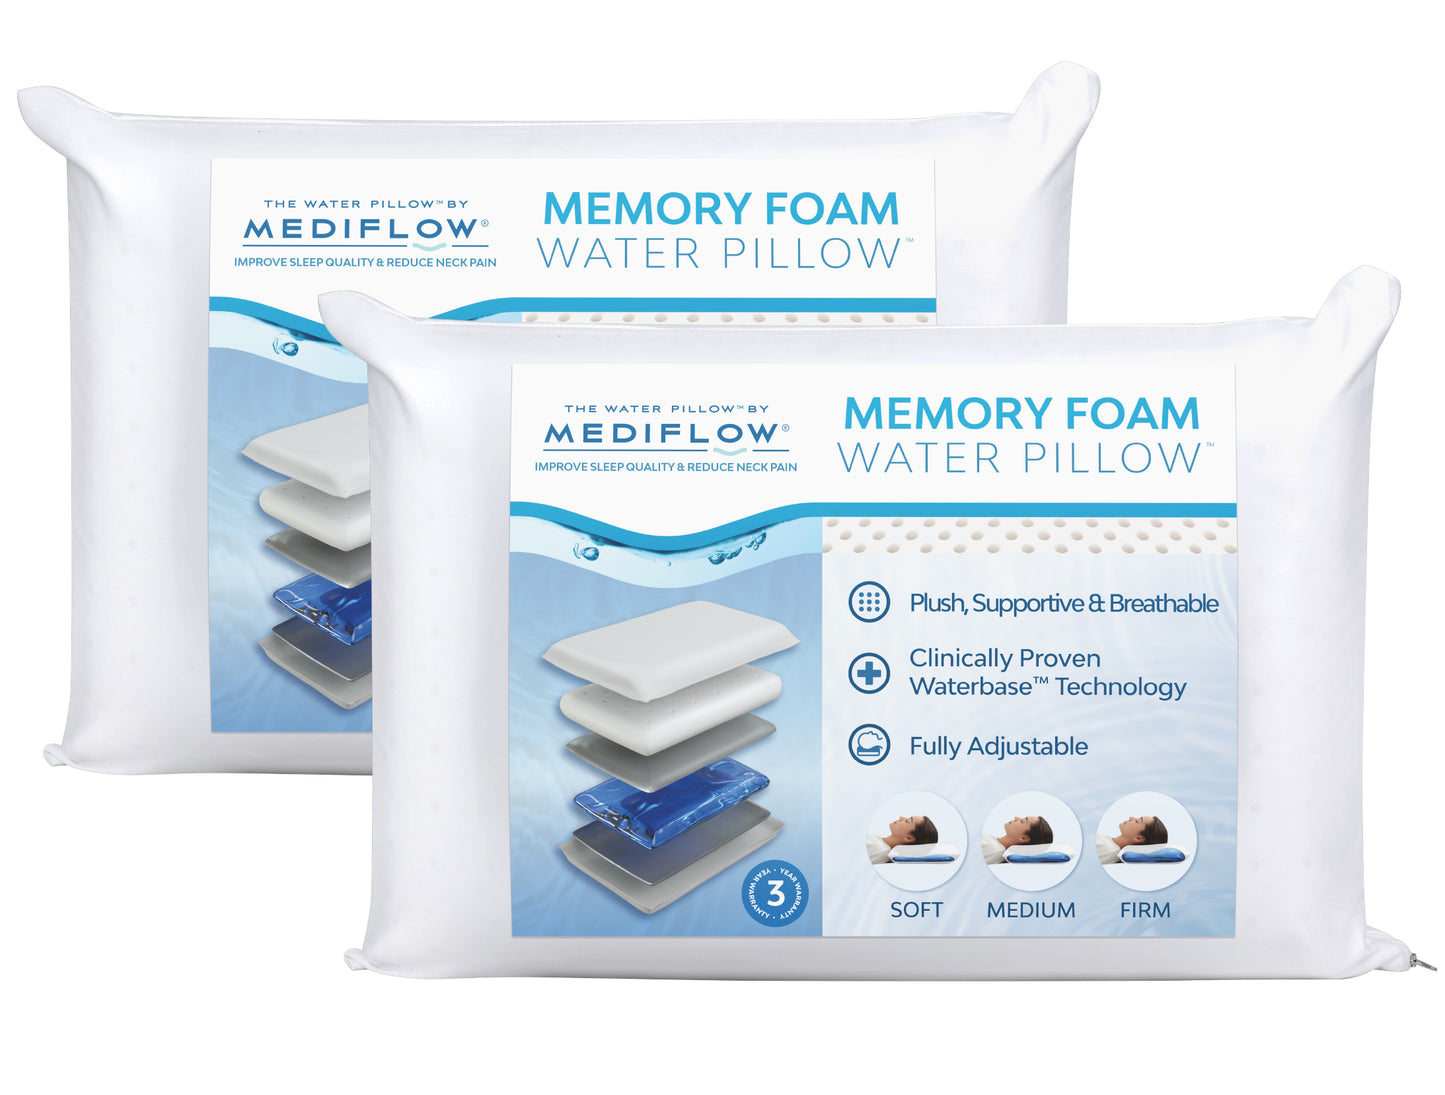 Mediflow Water Pillow - Original Memory Foam